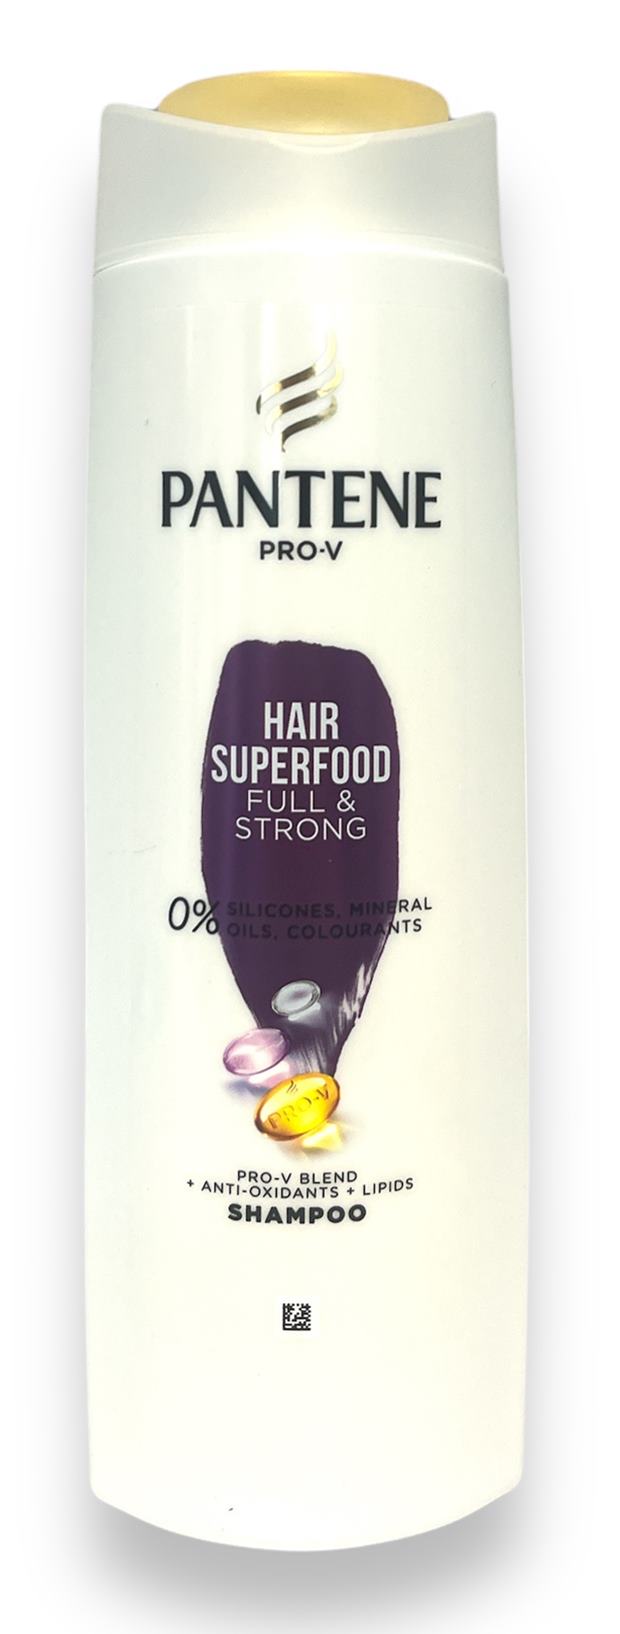 Шампоан PANTENE Hair superfood full and strong 400ml R /6 броя в кашон/